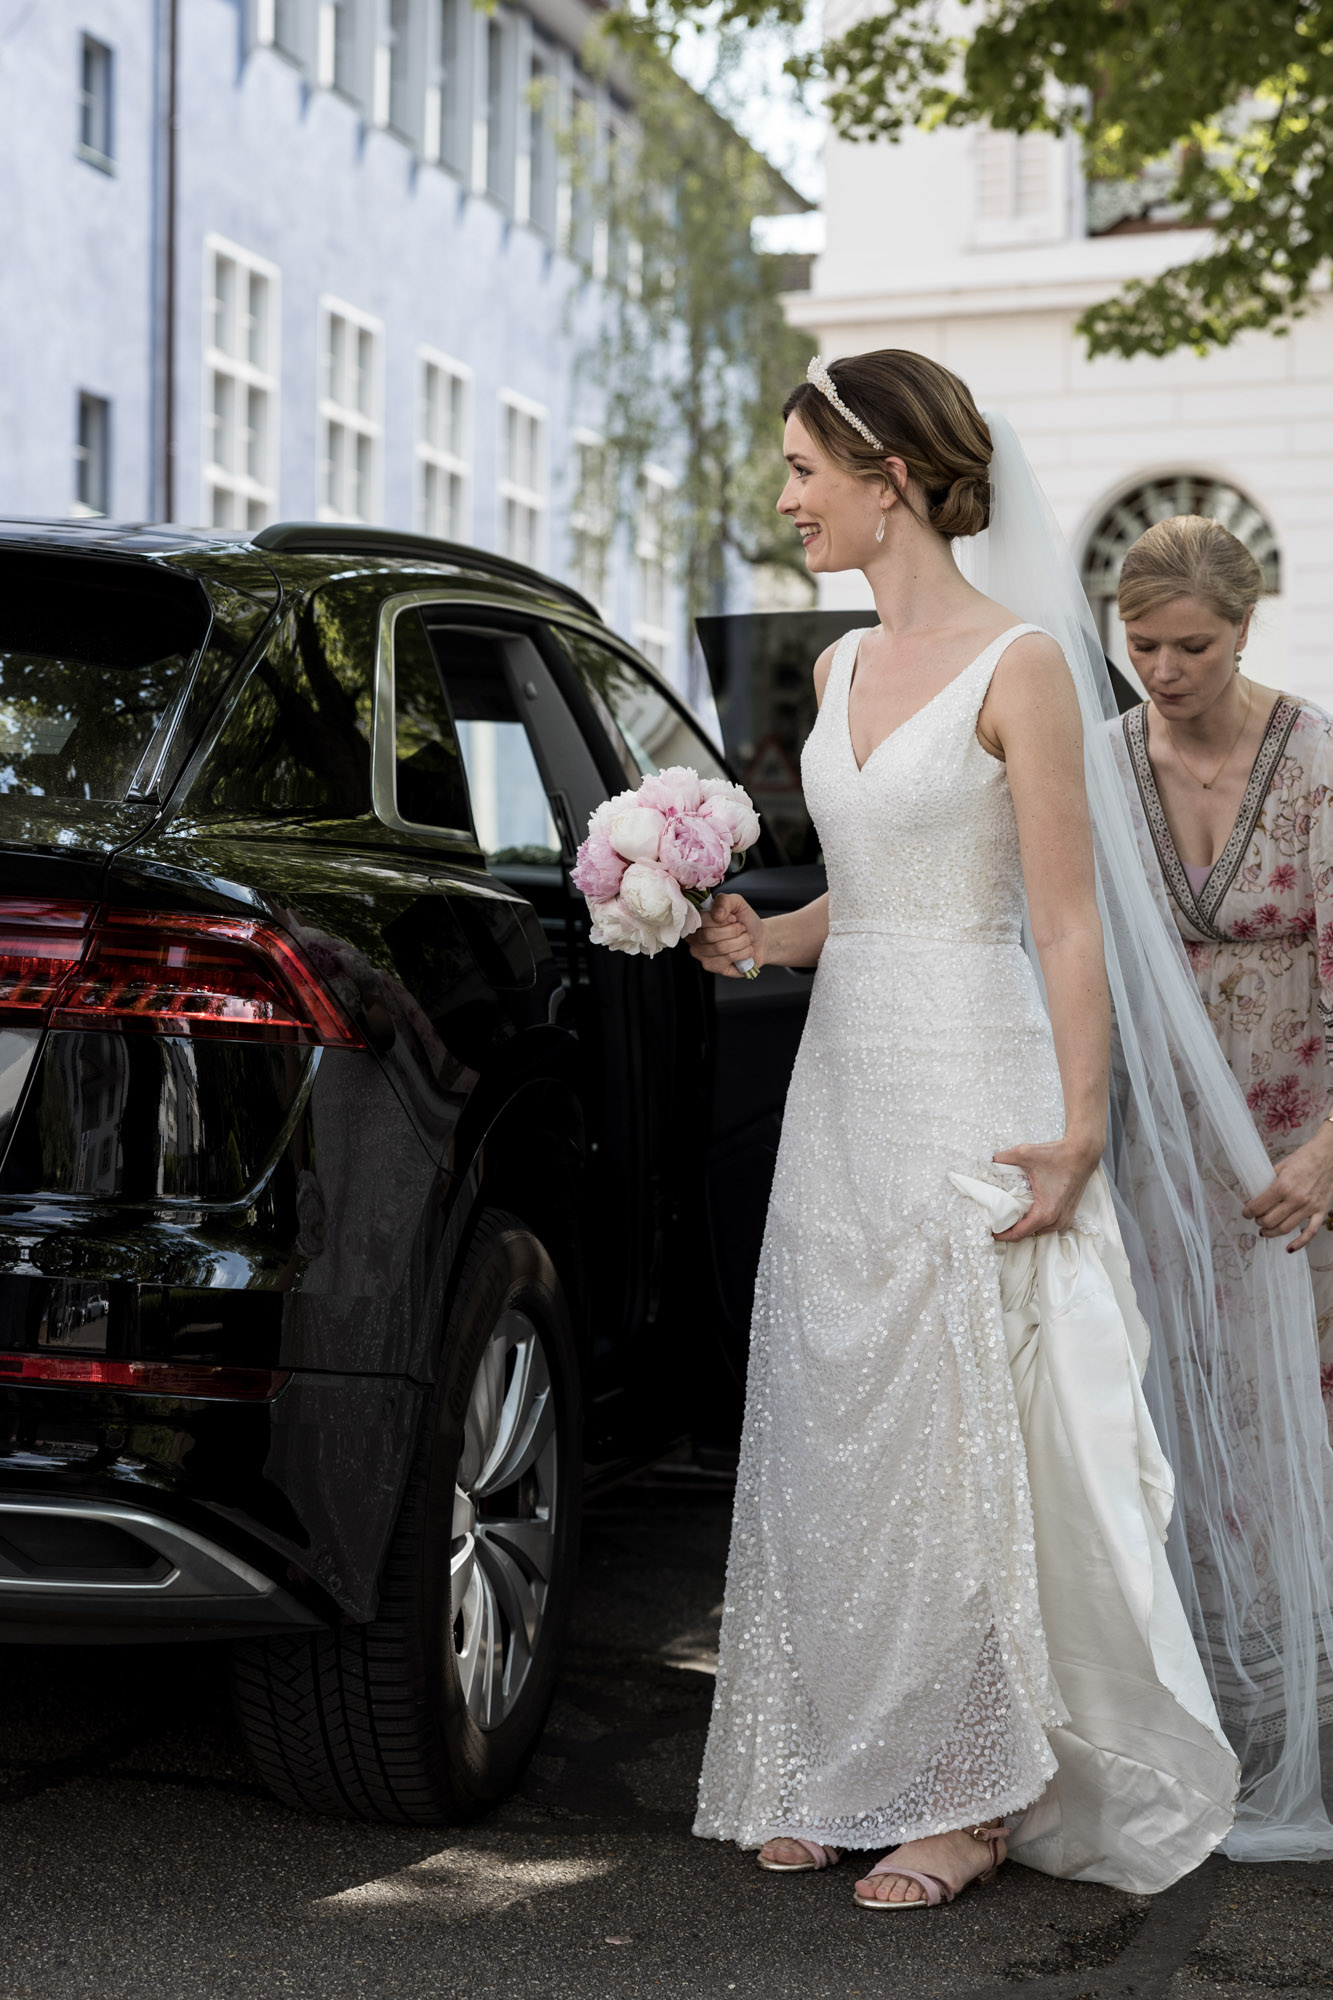 Die Braut steigt aus dem Auto - Hochzeitsfotografen Basel